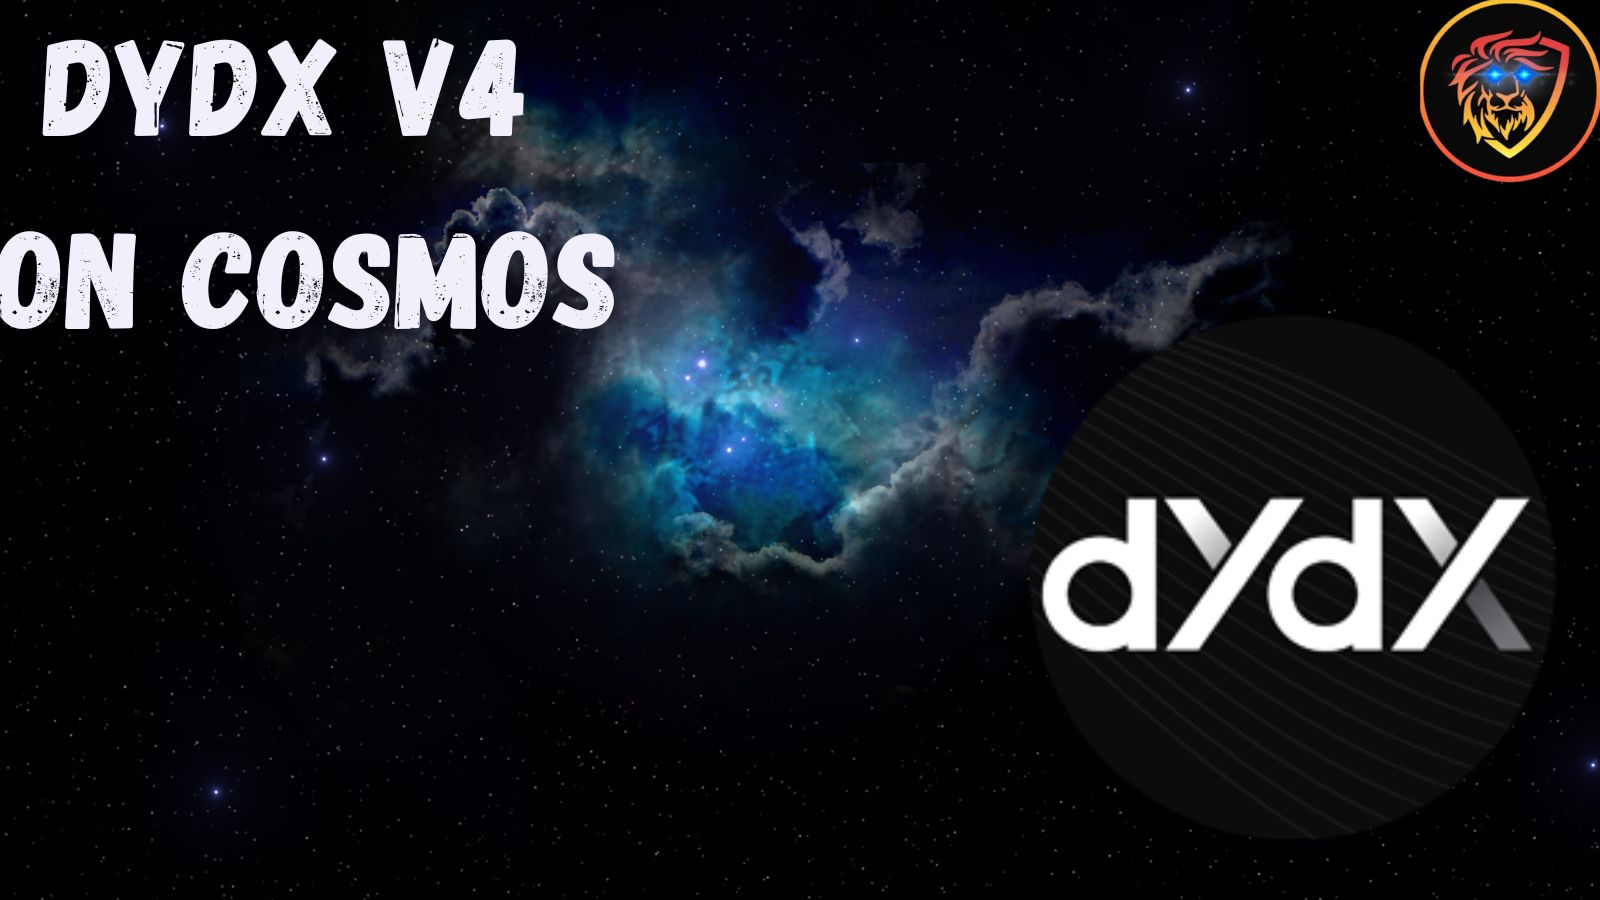 dydx exchange v4 on cosmos why.jpg